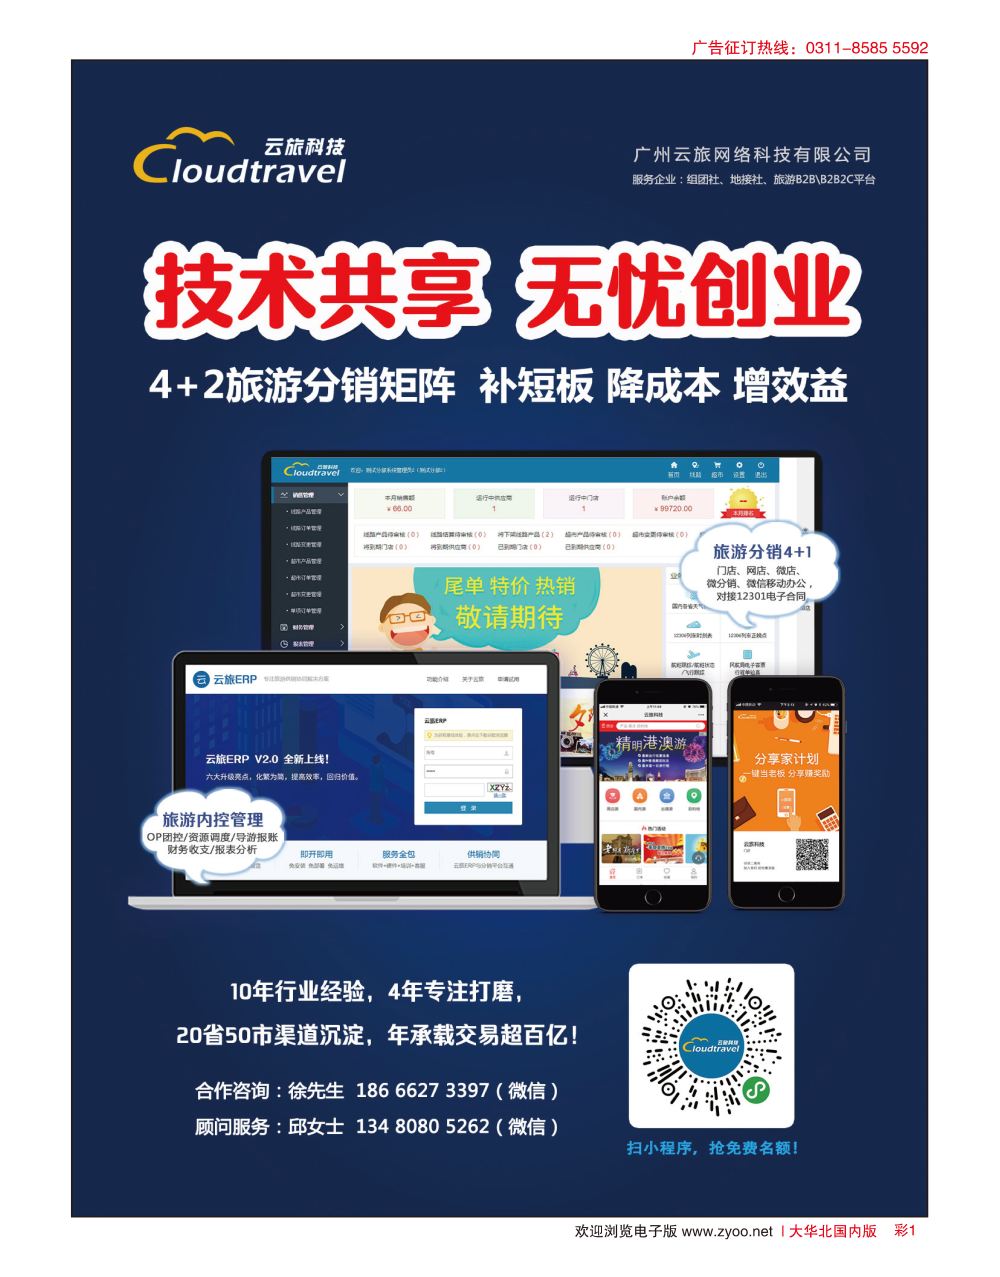 彩01 广州云旅科技-旅行社首选的系统服务商